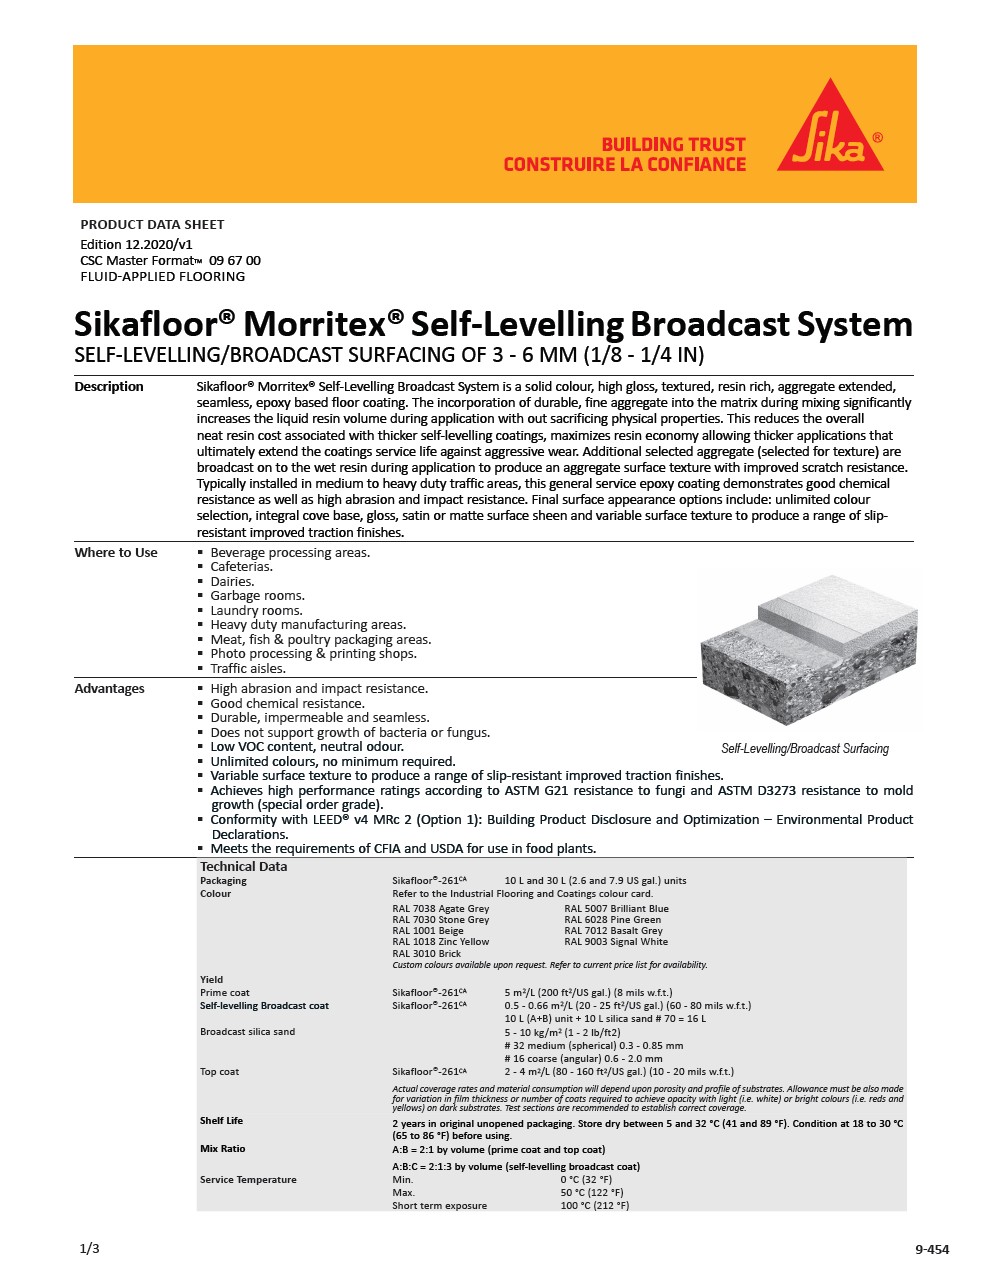 Sikafloor® Morritex® SL Broadcast System